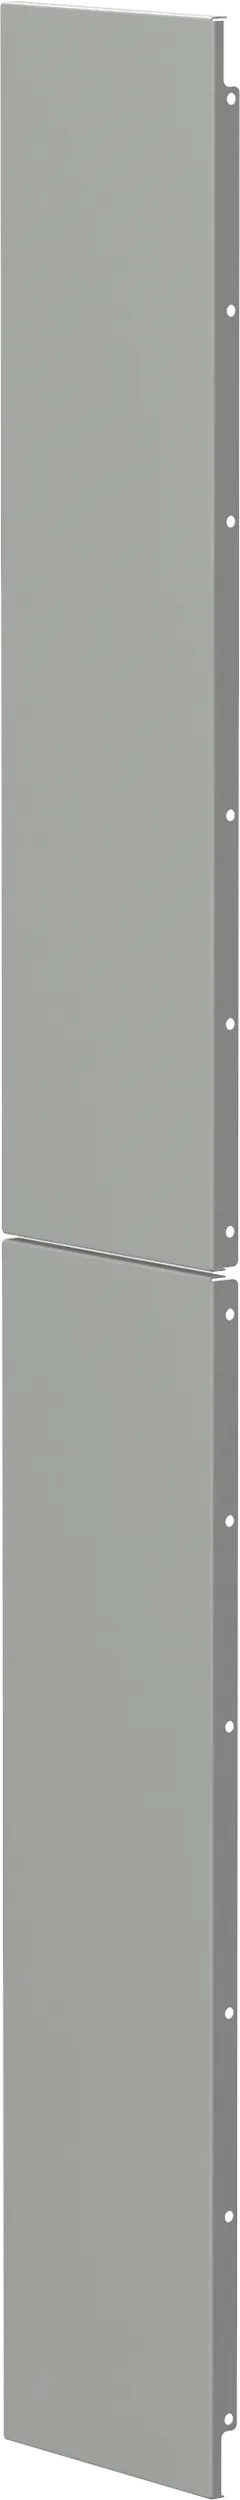 FORMAT Перегородка боковая для распределительных шин 110мм (2шт/компл) IEK